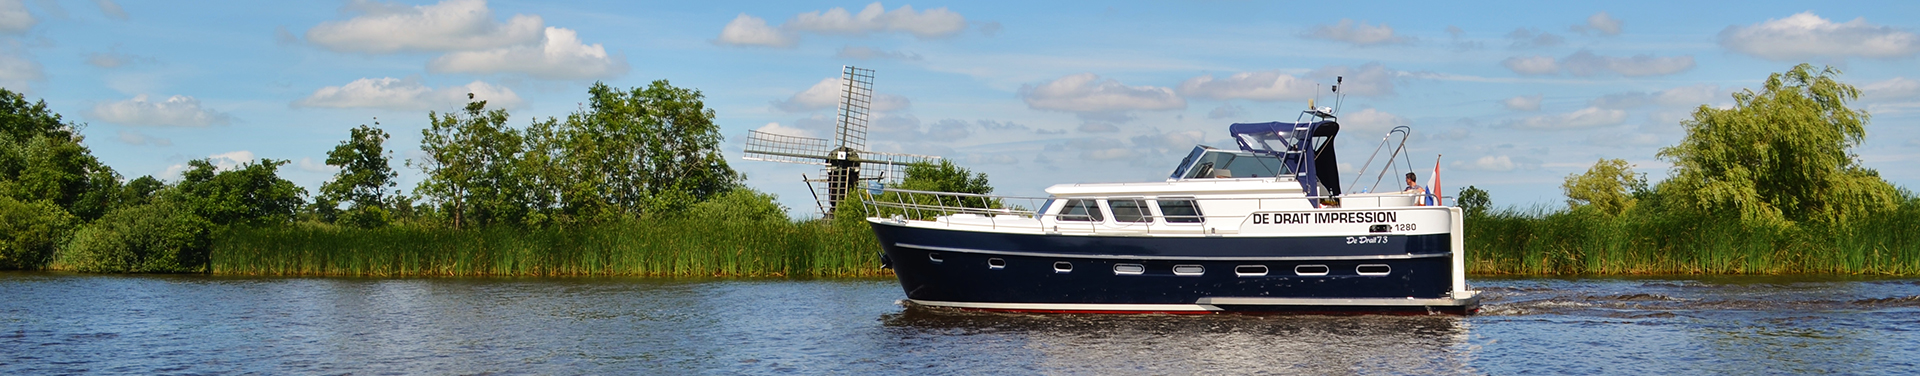 שייט תעלות Cruise in the golden century בהולנד